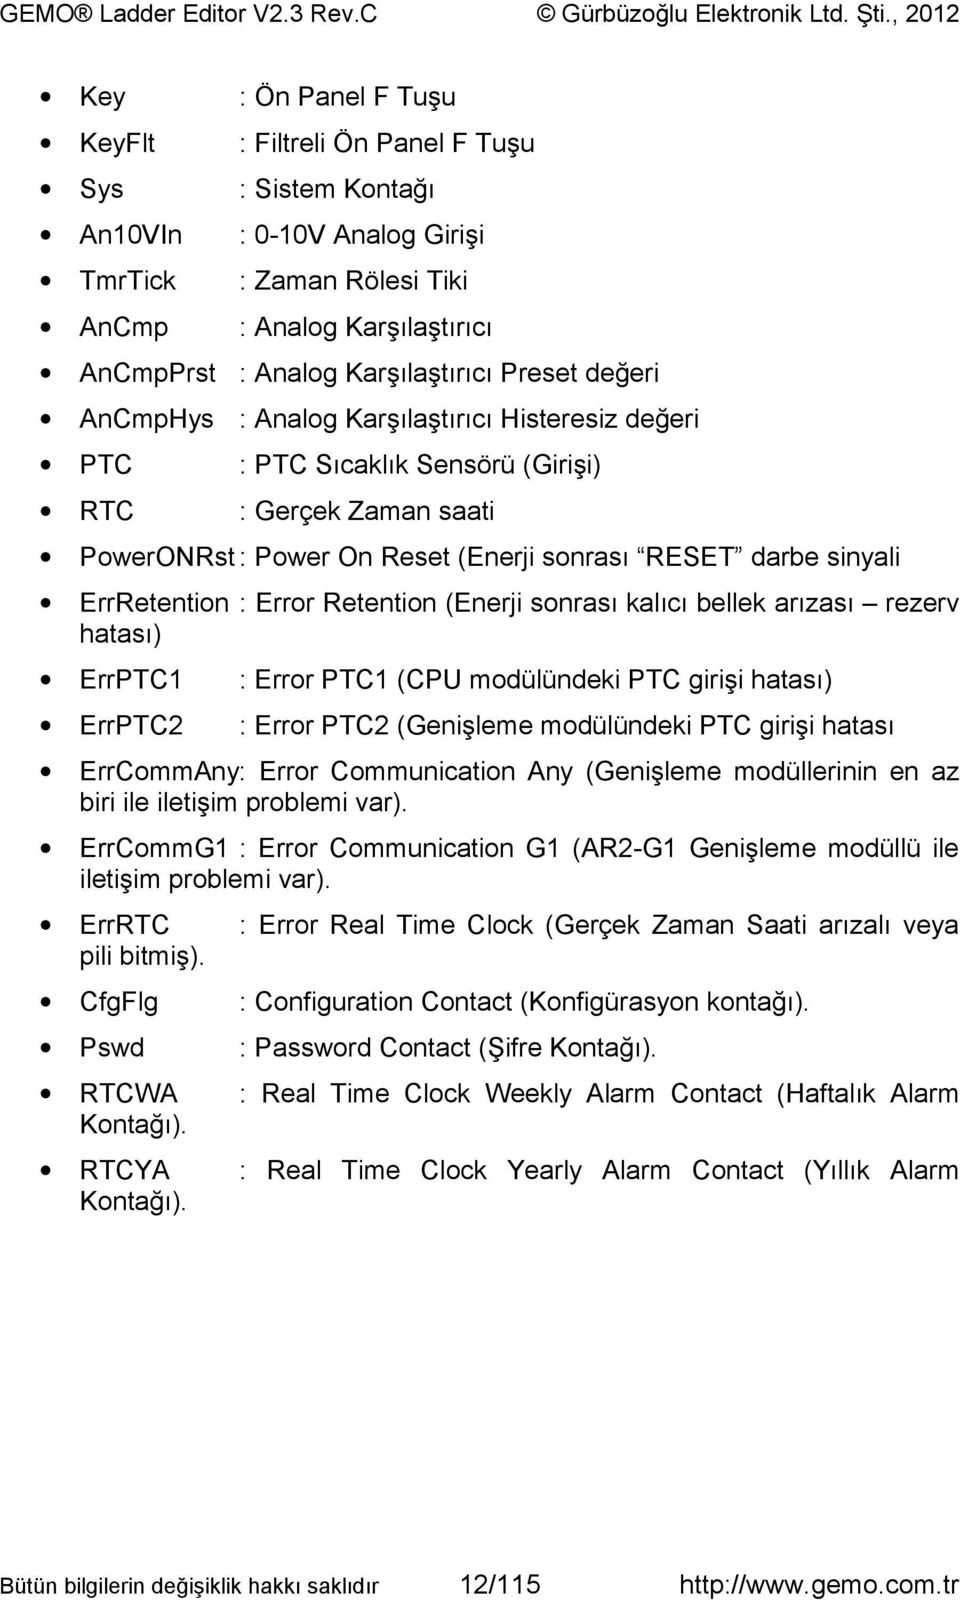 ErrRetention : Error Retention (Enerji sonrası kalıcı bellek arızası rezerv hatası) ErrPTC1 : Error PTC1 (CPU modülündeki PTC girişi hatası) ErrPTC2 : Error PTC2 (Genişleme modülündeki PTC girişi